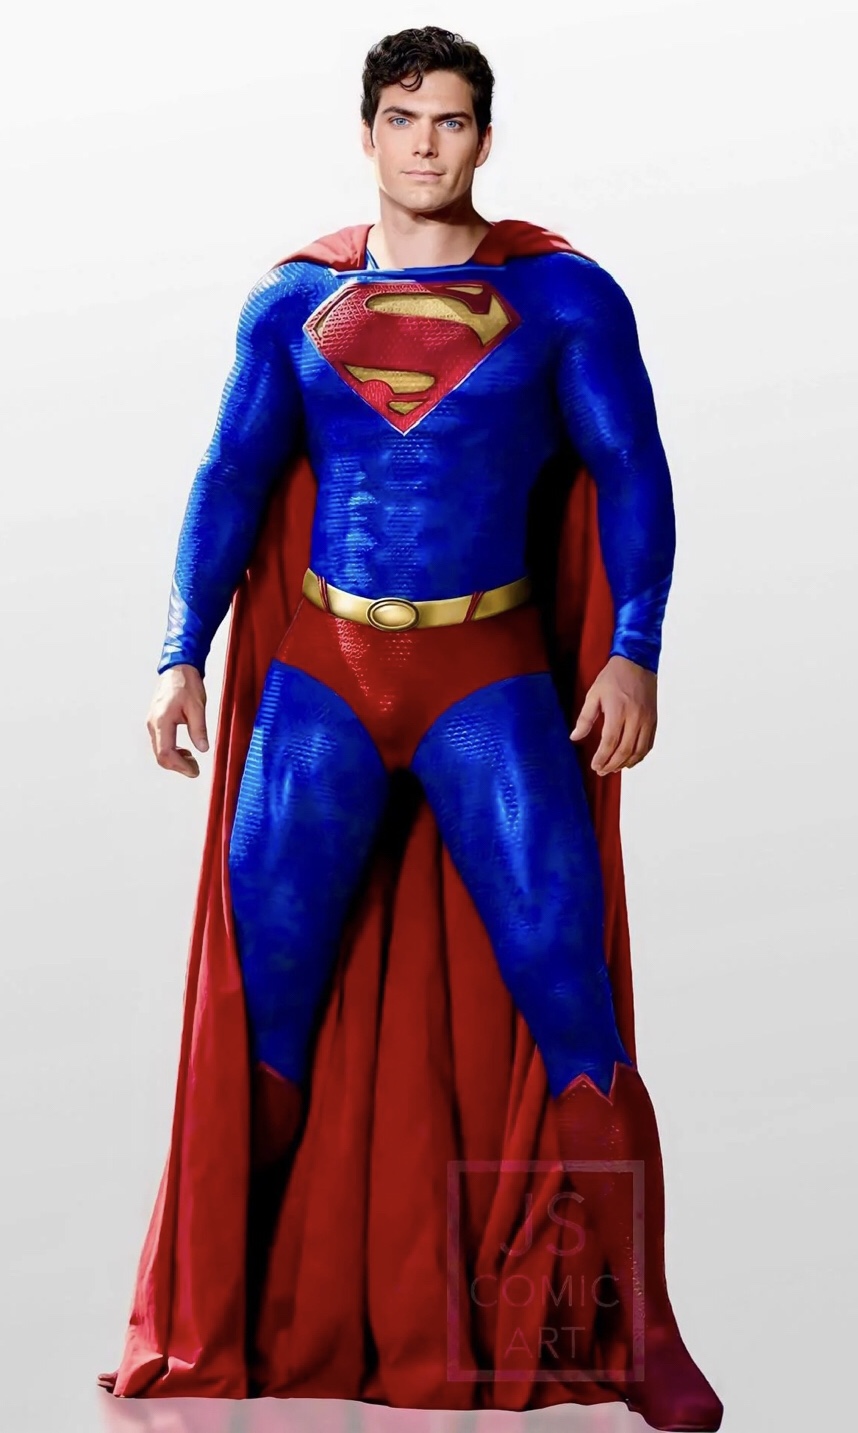 DCEU Superman Edit V1 by u/Smooth_Boysenberry_9 by TytorTheBarbarian on ...